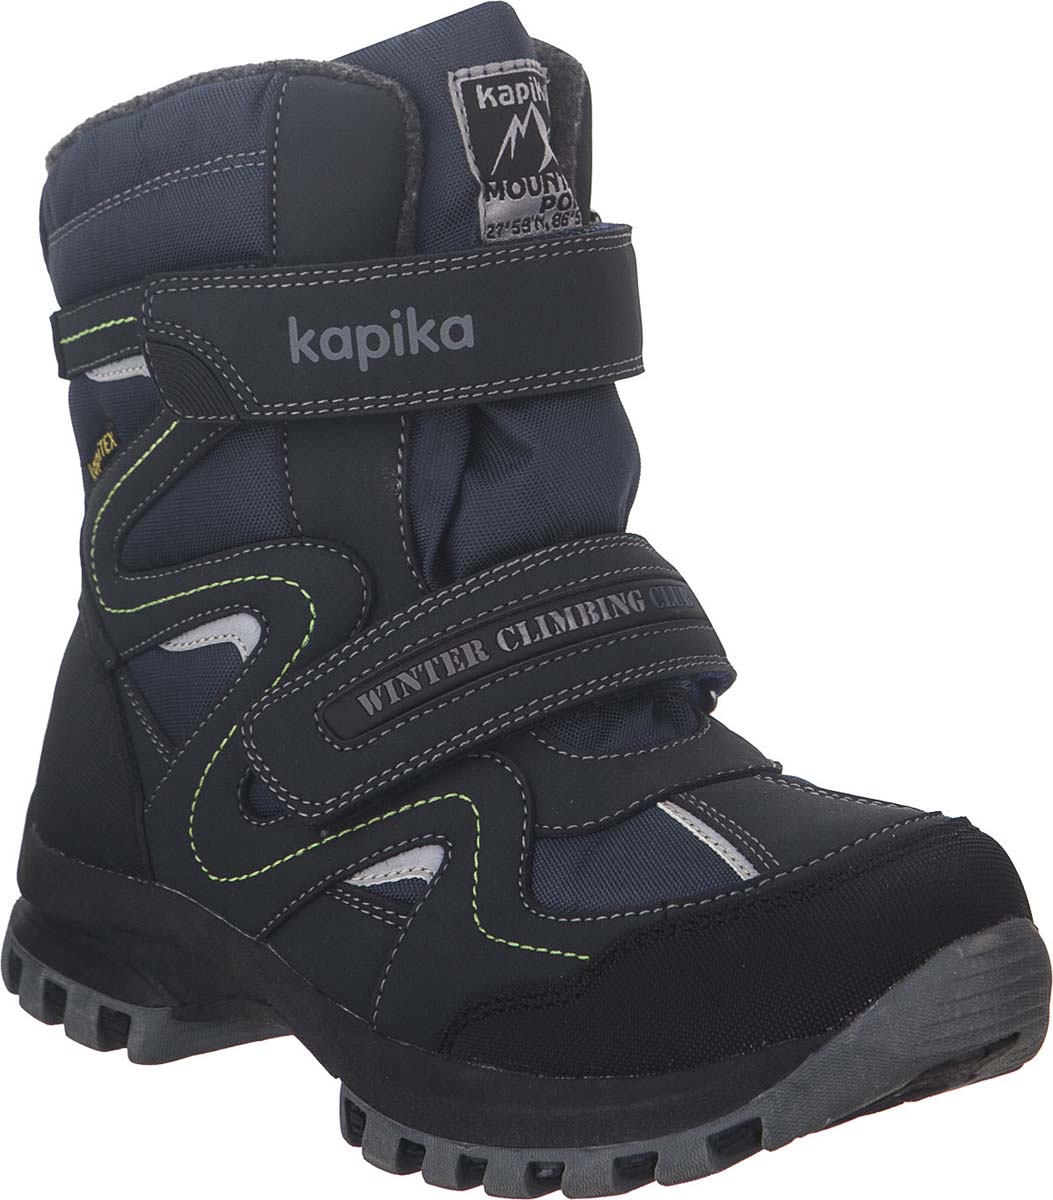 Ботинки для мальчика Kapika KapiTEX, цвет: темно-синий. 43175-2. Размер 35